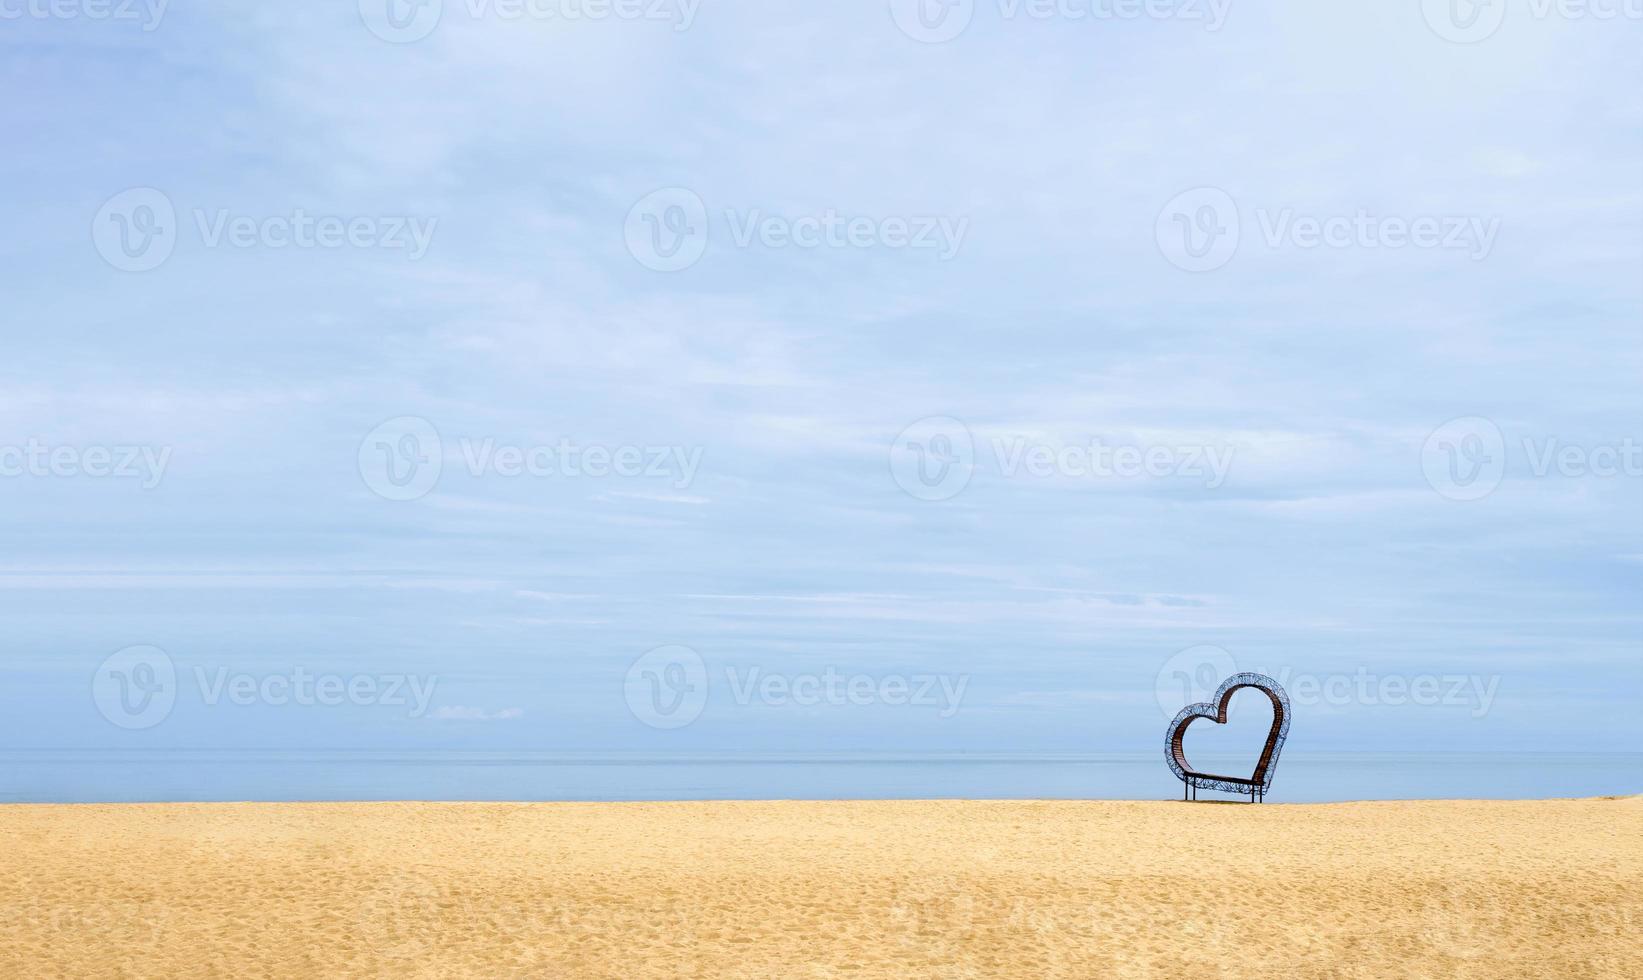 coeur sur la plage de sable au bord de la mer avec un ciel bleu clair, un cadre de coeur sur le sable brun d'une plage tropicale avec un océan bleu clair sur l'île en été ensoleillé, symbole romantique pour la carte de Saint Valentin ou le mariage photo